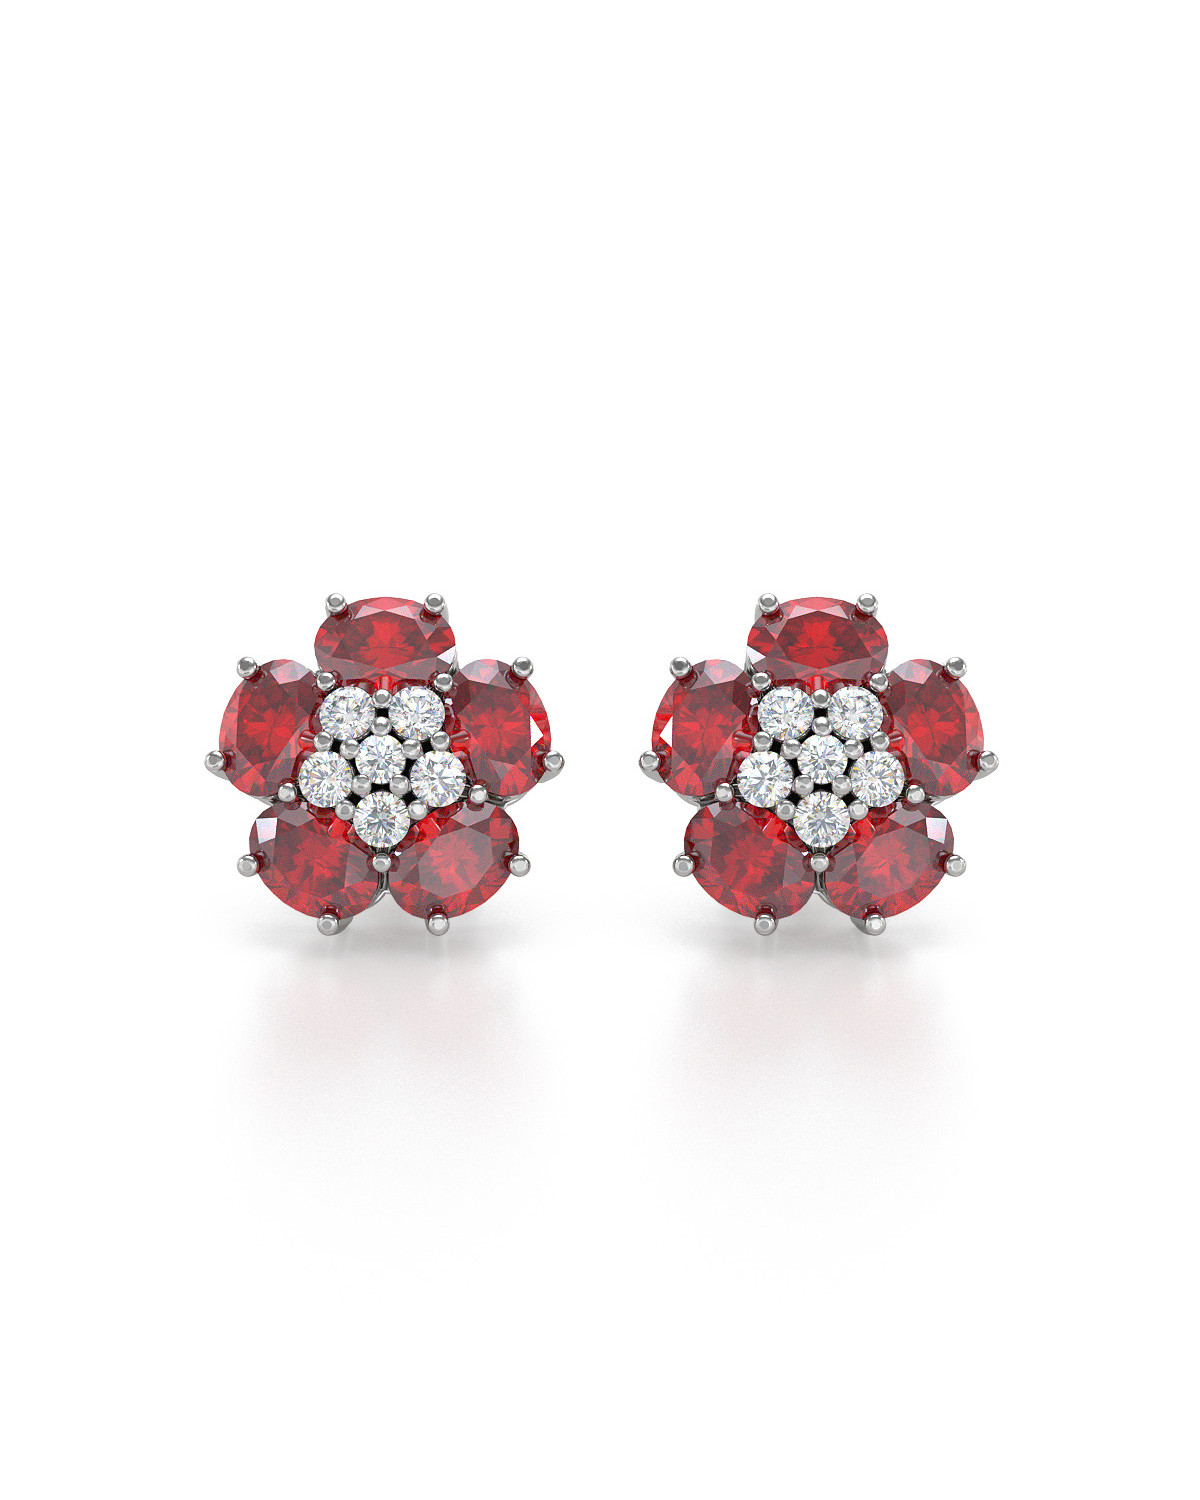 Boucles d'oreille Fleur Rubis et Diamants sur Argent 925 2.86grs